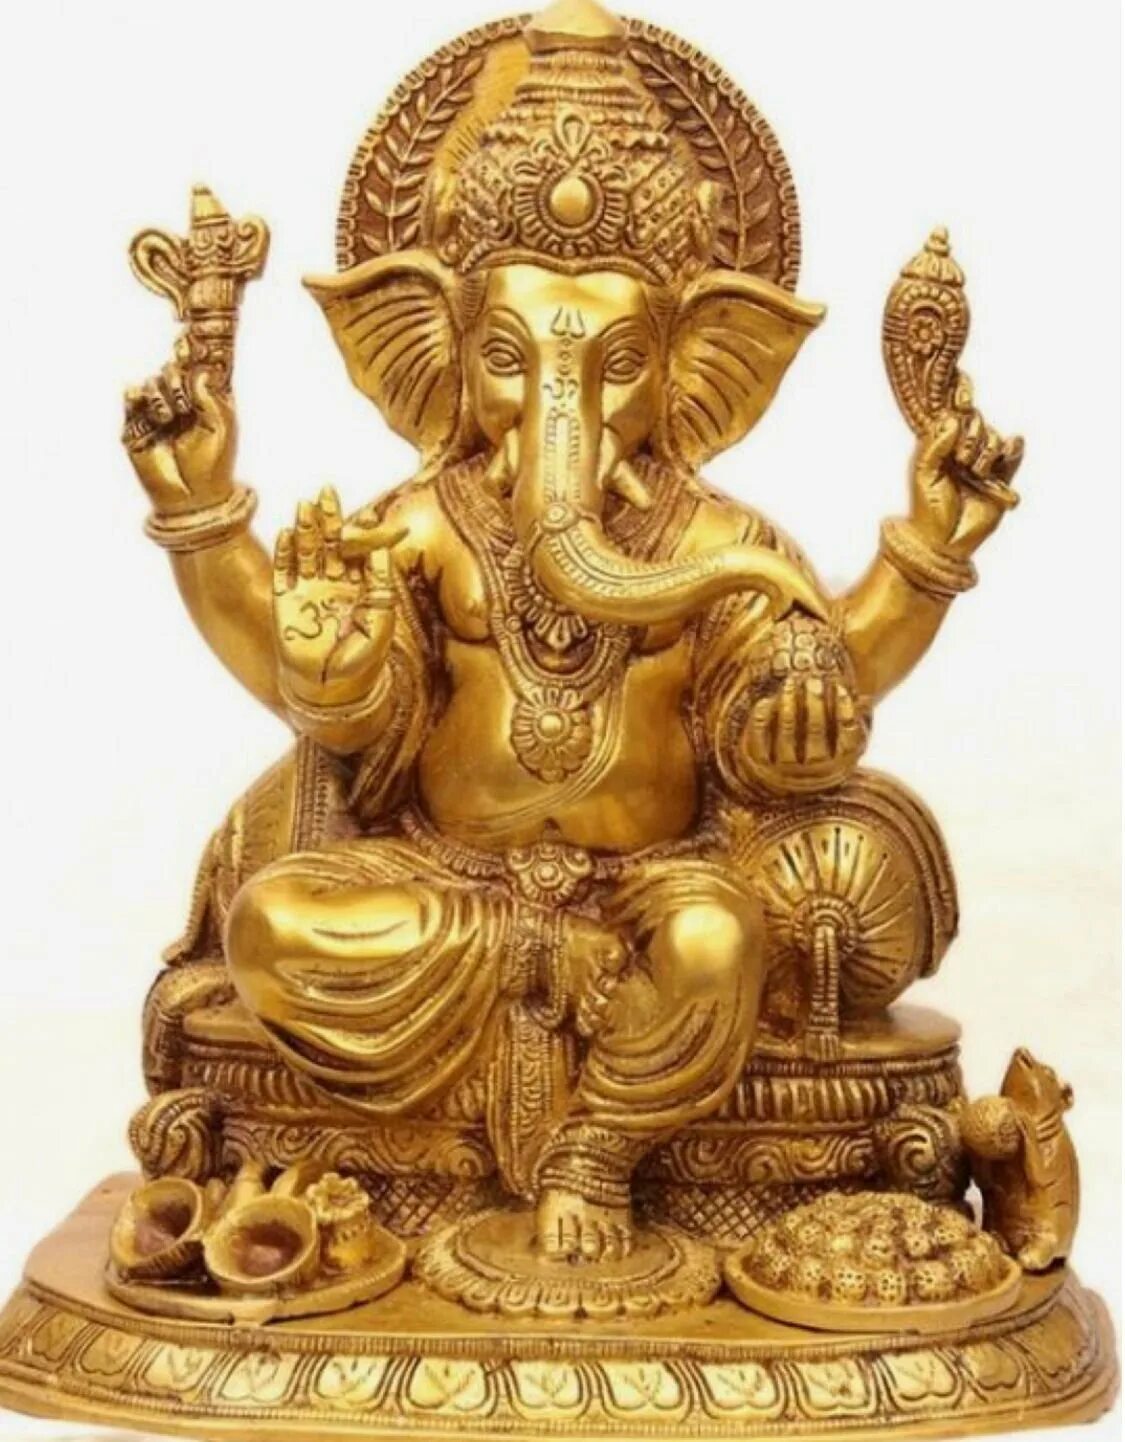 Ганеша Бог богатства. Ганеша слон Бог богатства. Ганеша индийский Бог богатства. Статуэтка" Бог Ганеша"Индия. Бог достатка